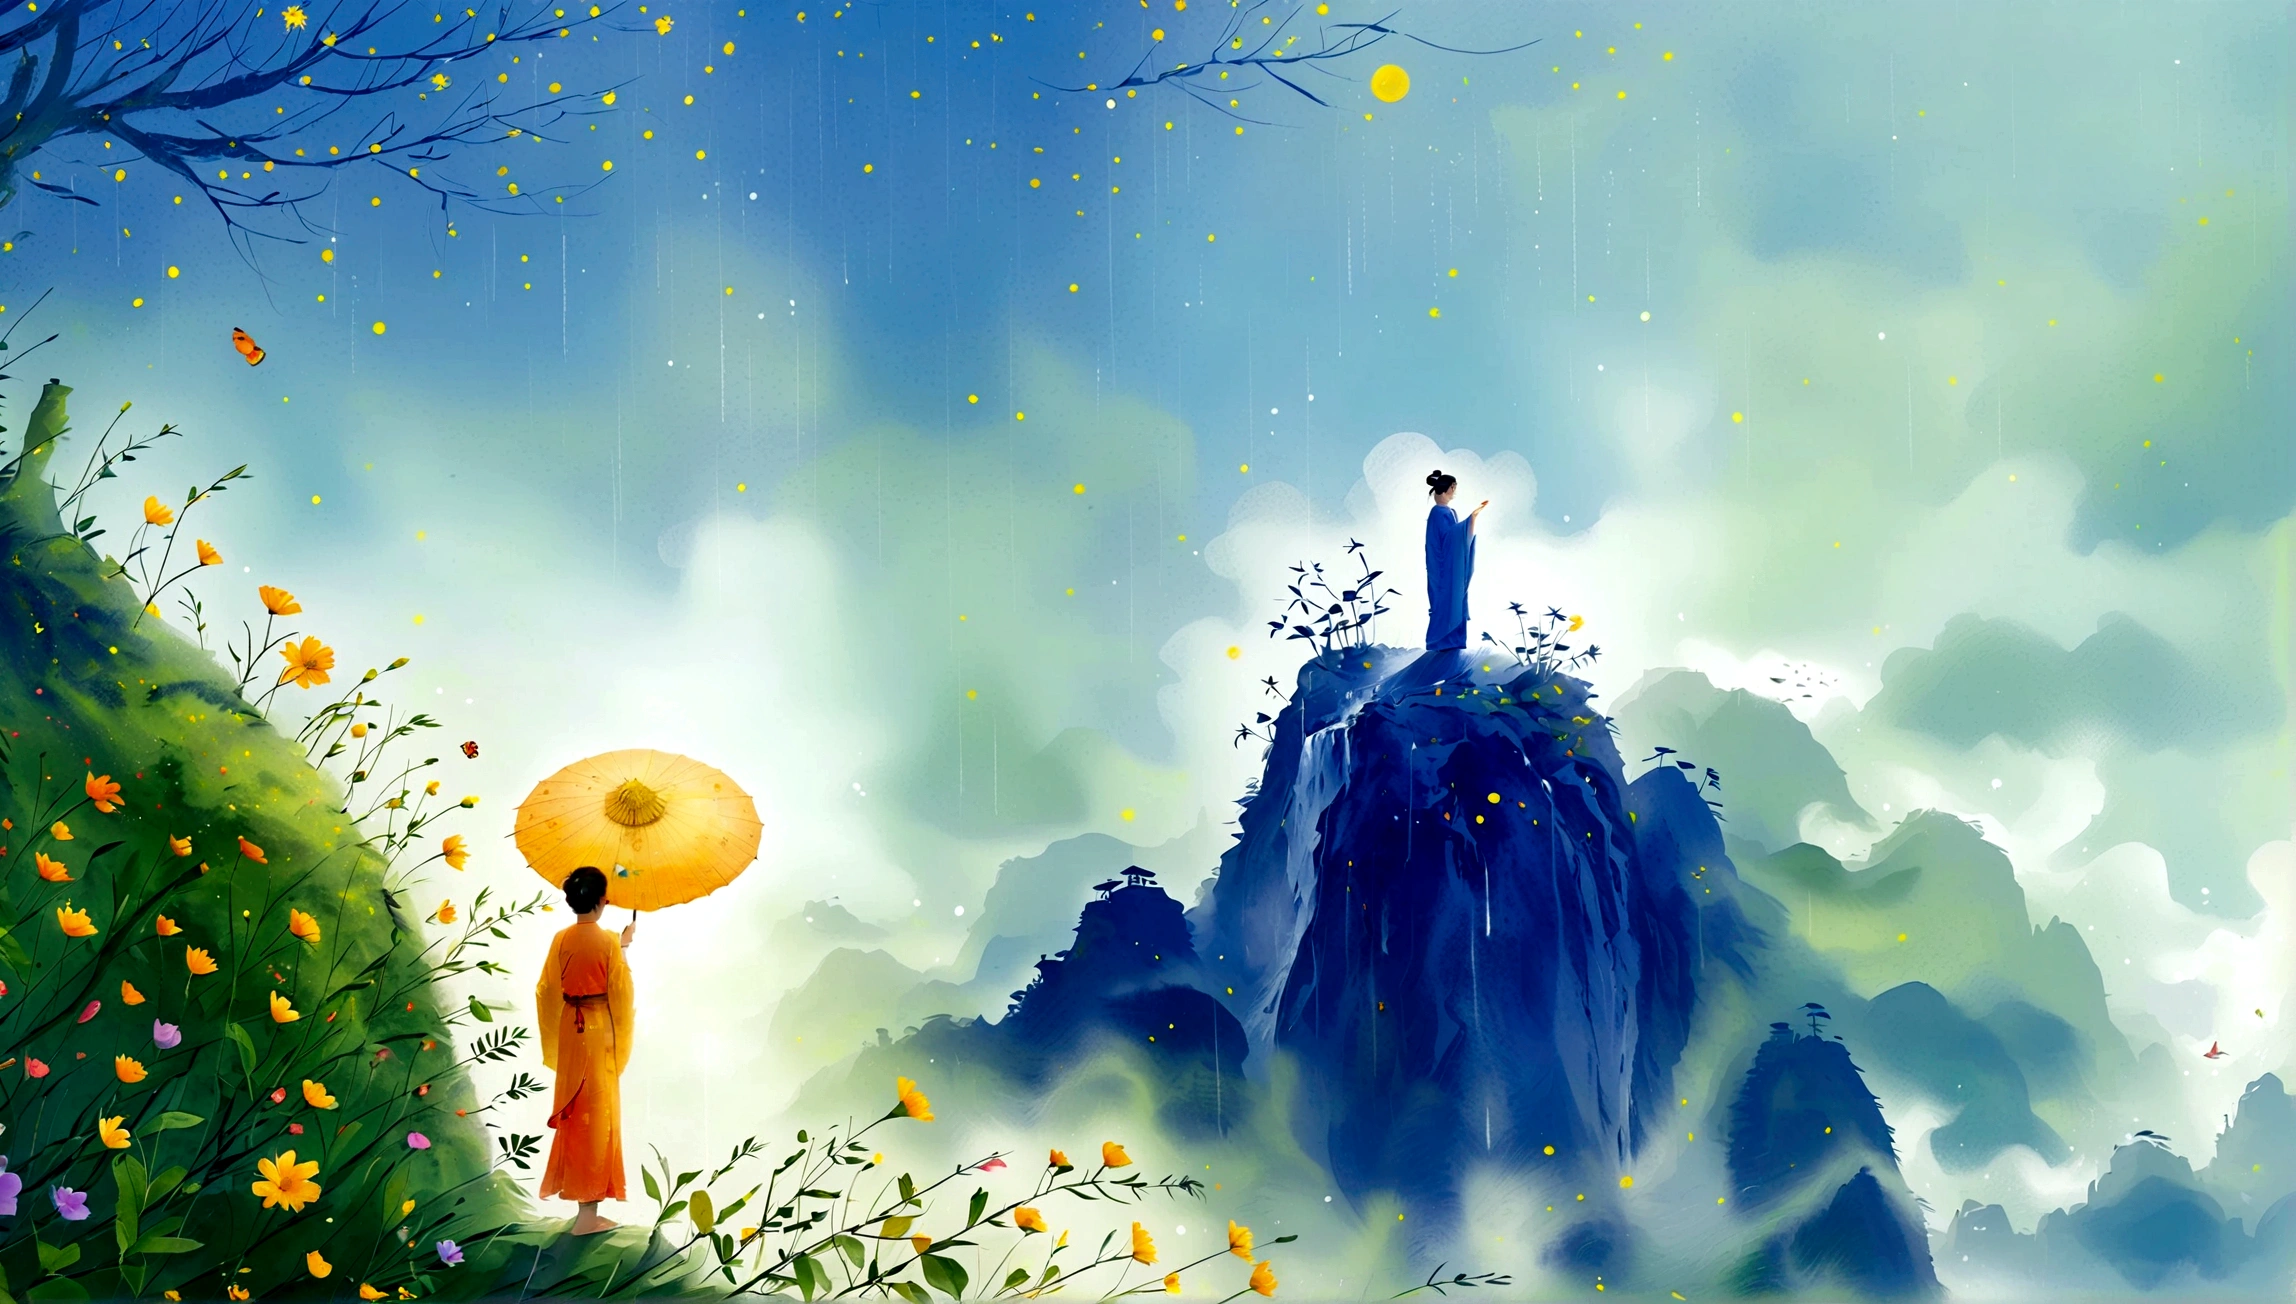 أسلوب التوضيح لـ Cai GuoRUN, 1فتاة, امرأة ترتدي تنورة طويلة تقف على منحدر وتنظر إلى السماء المرصعة بالنجوم, إلهة الفضاء, آلهة درب التبانة, إلهة السماء, أثيري نجمي, حلم, ساحر سماوي جميل, لوحة خيالية جميلة, فن الخيال الجميل, الخيال أثيري, Very فن الخيال الجميل, الخيال الفني الرقمي, ساحر وعالم آخر, جمال الخيال, The beautiful art of Octane UHD 8 كيلو rendering, الضوء الحجمي, الضوء الطبيعي الناعم, (حساسة للغاية:1.2, فقدان التركيز:1.2, زاهى الألوان, إضاءة الفيلم, تتبع الأشعة), غنية للغاية, مفصلة للغاية, 1cgrssh1, chiaroscuro, تحفة, 8 كيلو